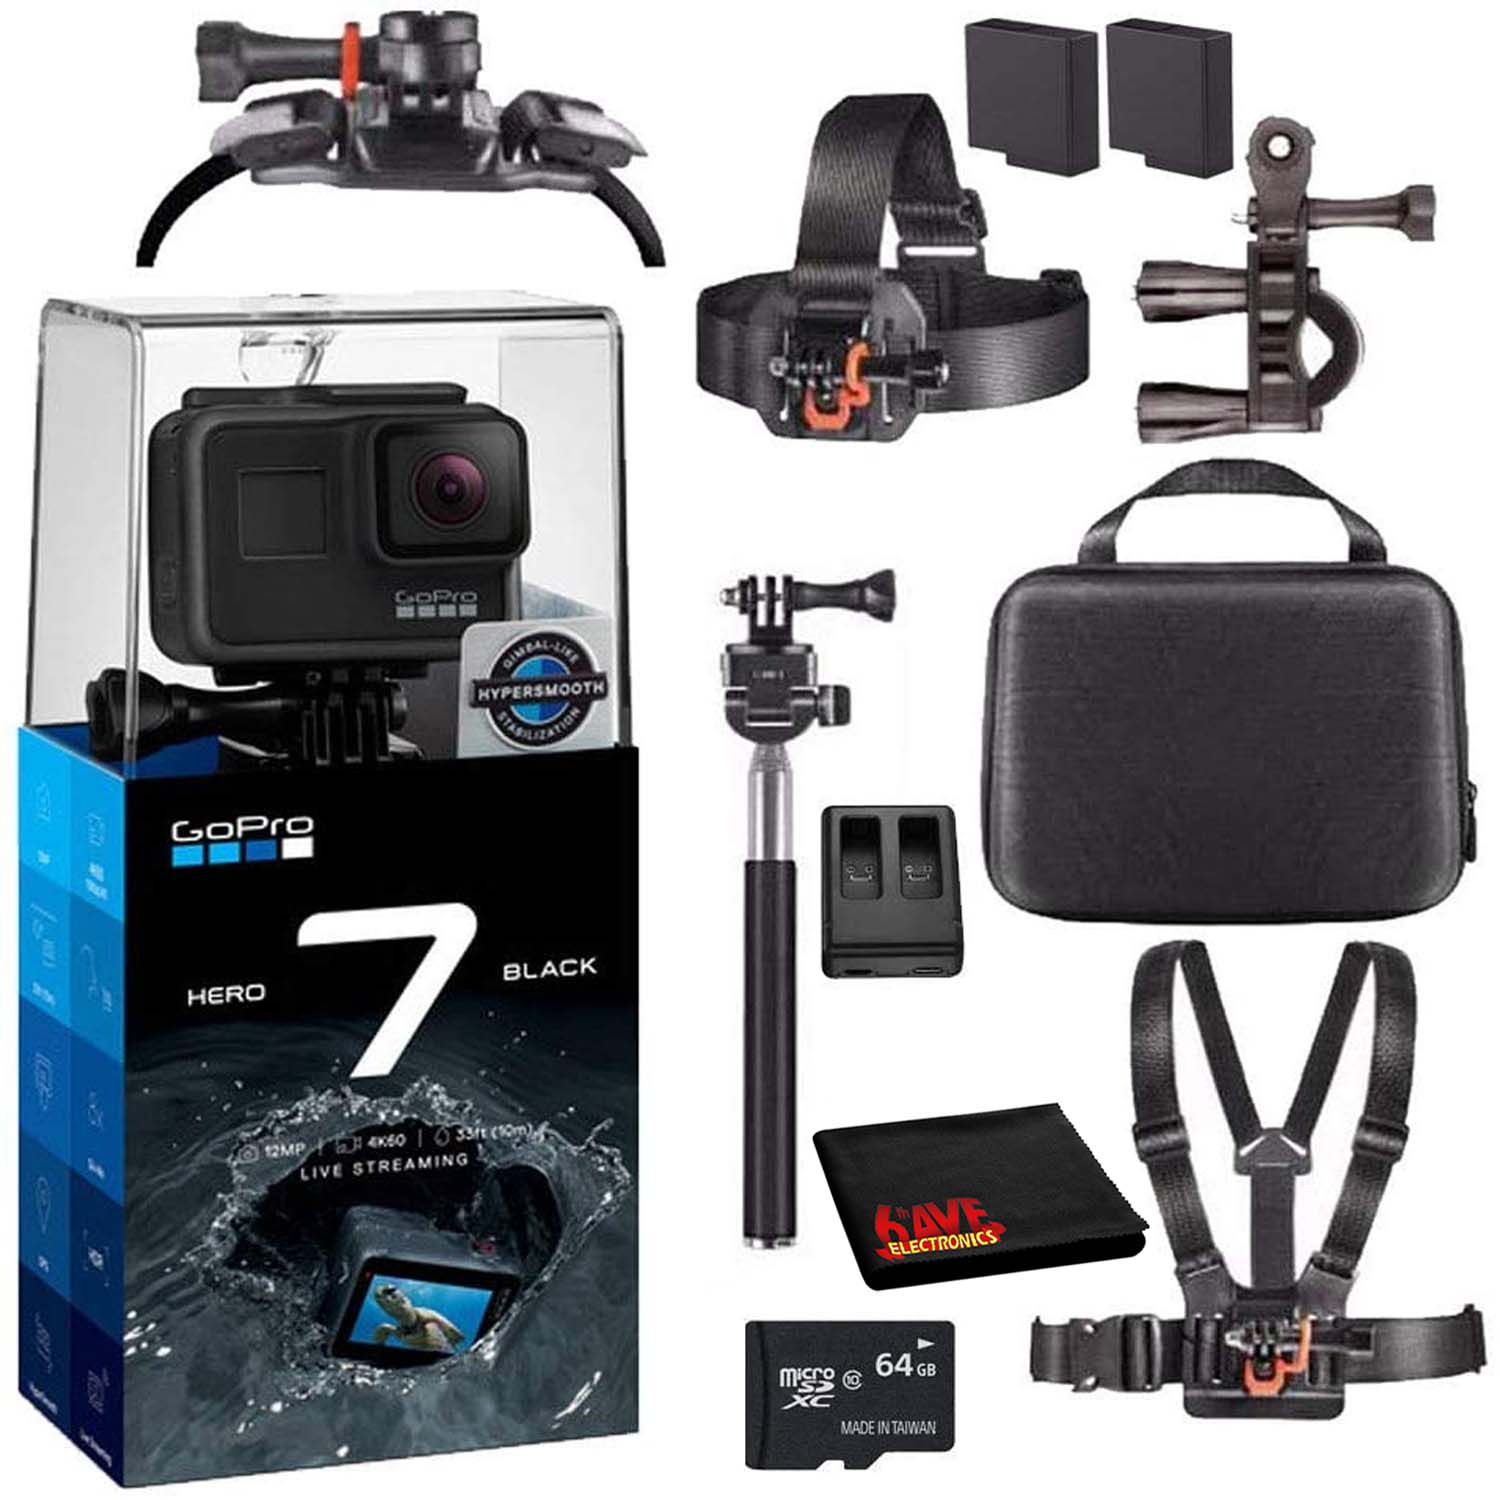 GoPro HERO7 Black Waterproof Digital Action Camera Bundle + 64GB microSD Card